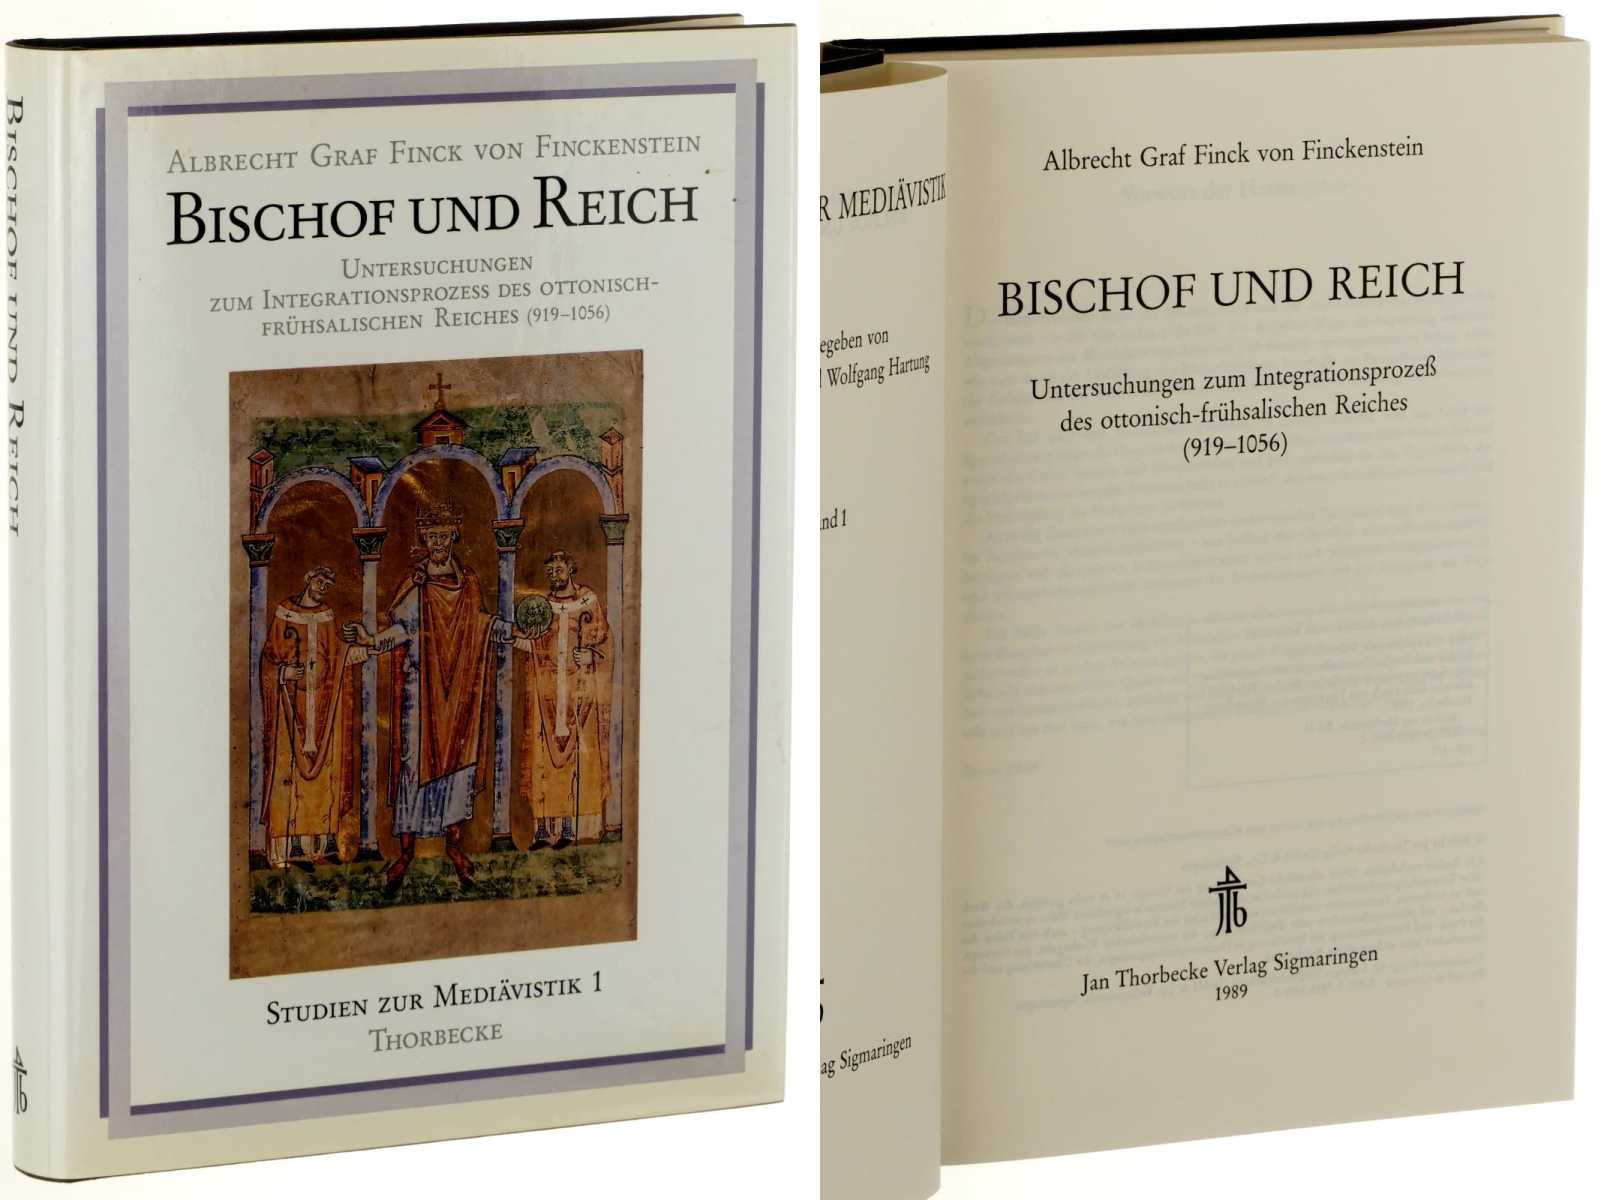 Finck von Finckenstein, Albrecht:  Bischof und Reich. Untersuchungen zum Integrationsprozeß des ottonisch-frühsalischen Reiches (919 - 1056). 